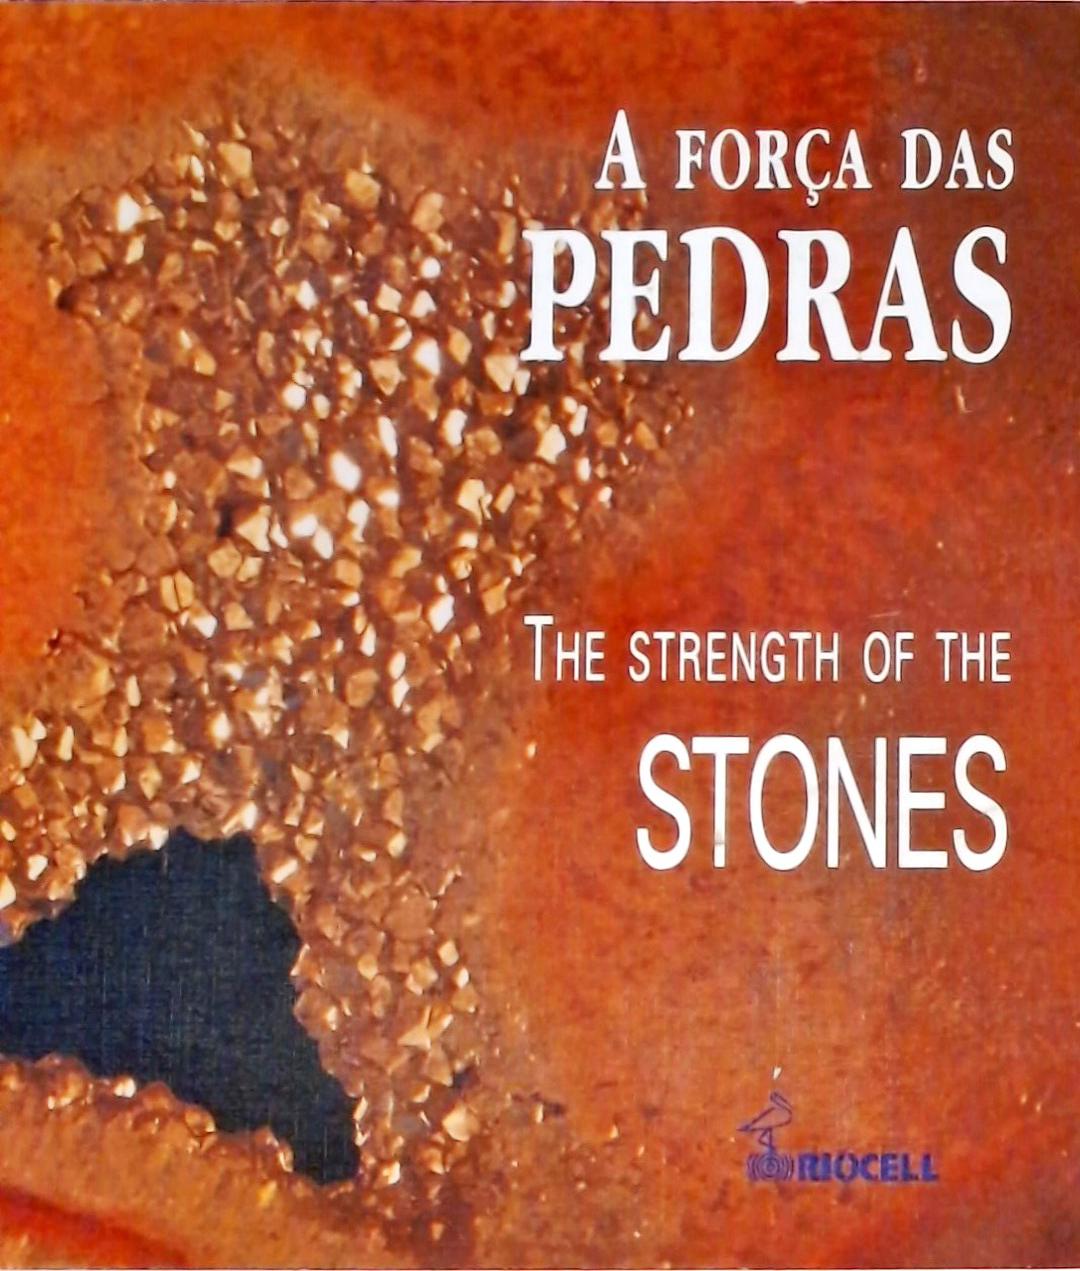 A Força das Pedras - The Strength of the Stones